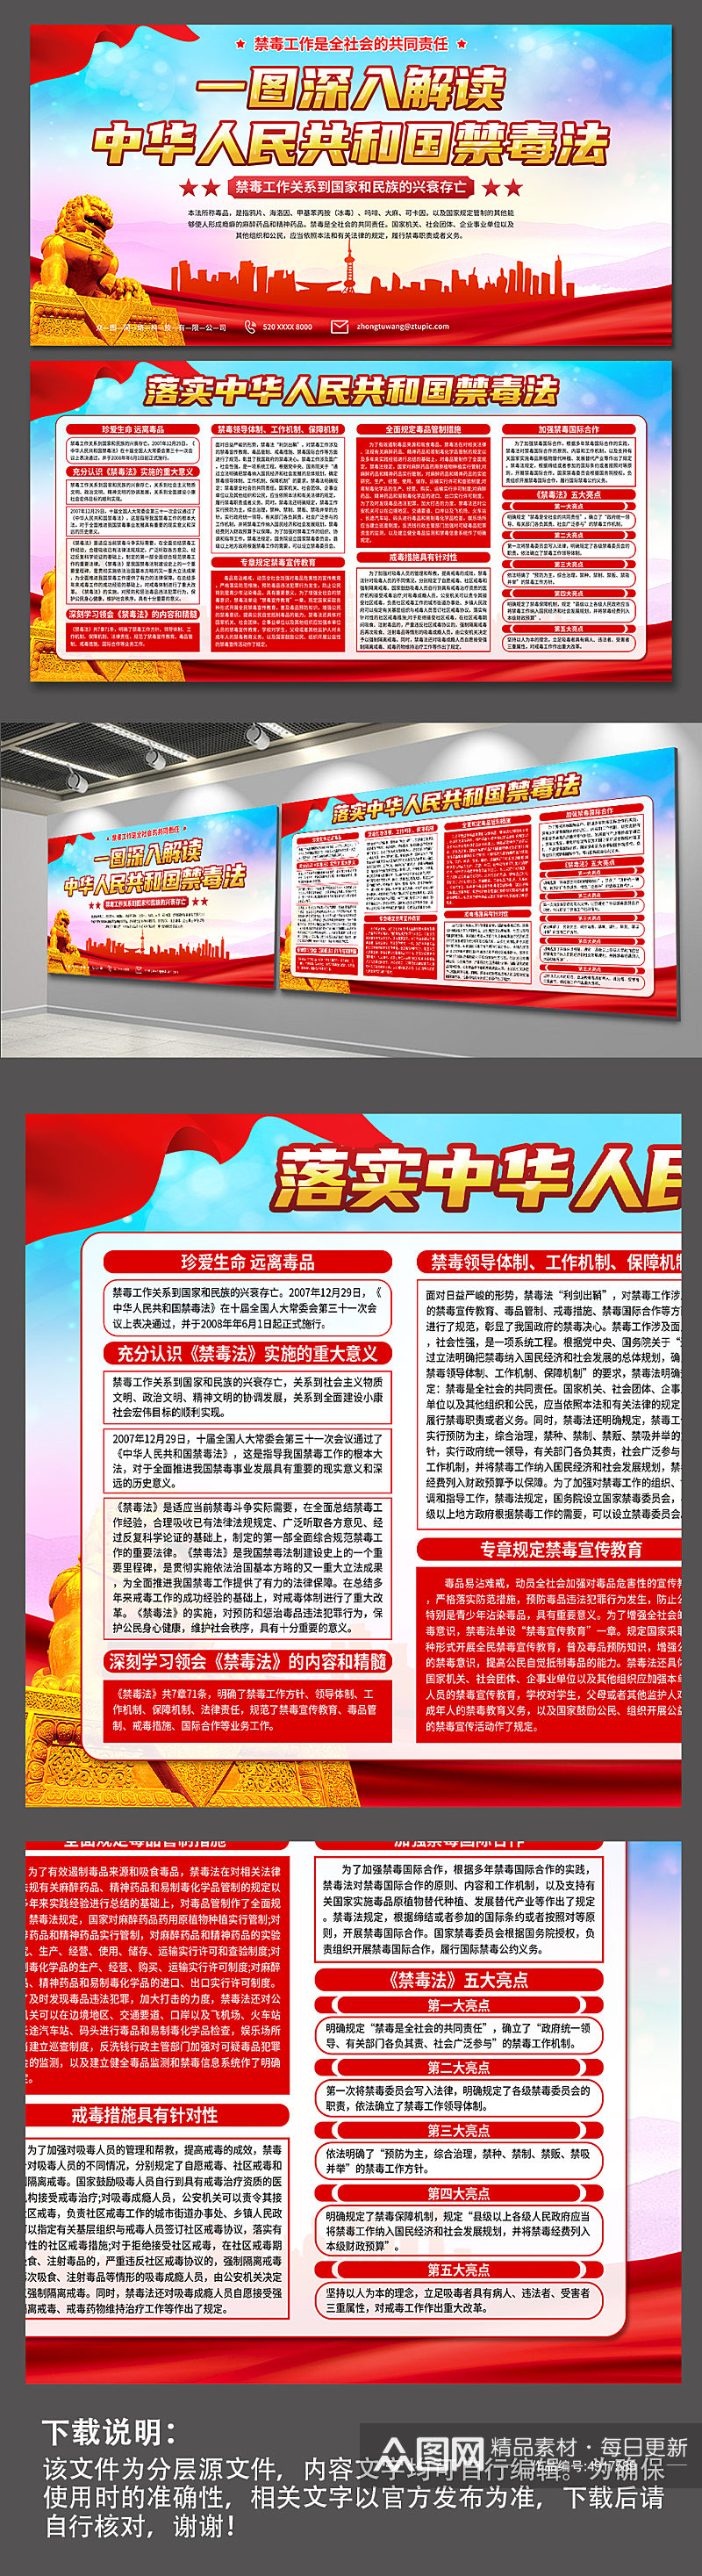 红色中华人民共和国禁毒法解读拒绝毒品展板素材